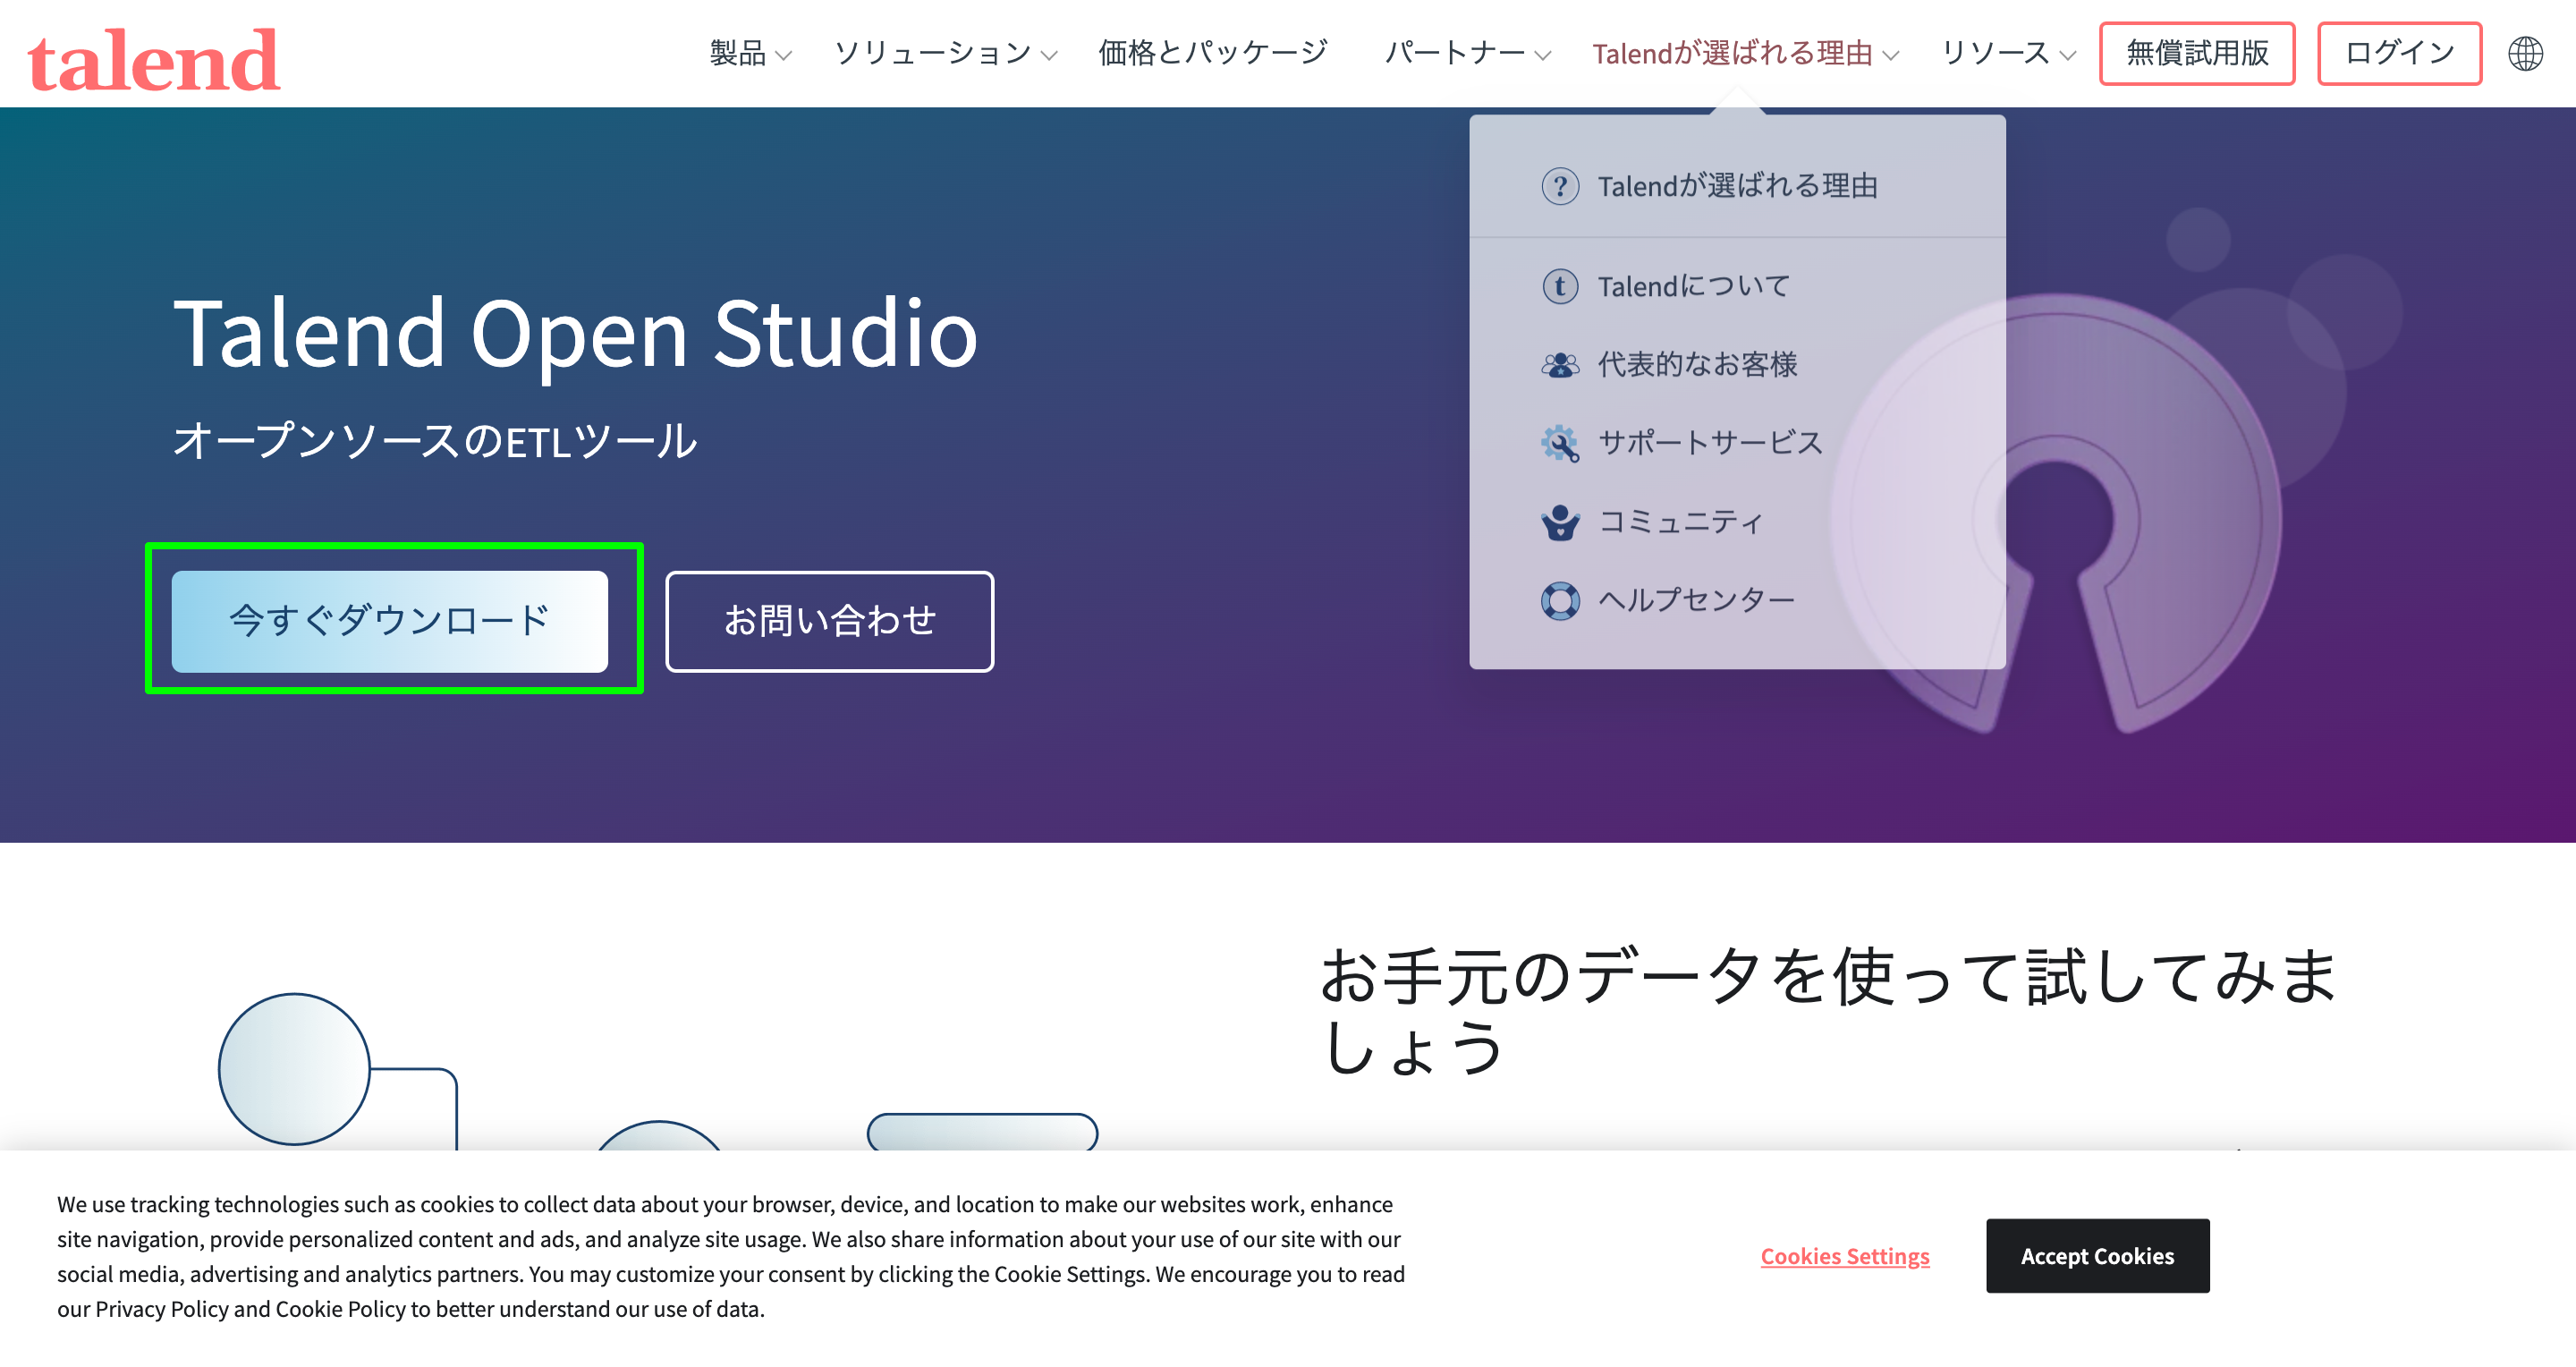 Talend Open Studio：オープンソース(OSS)のETLと無料のデータ統合 _ Talend _ Talend.png